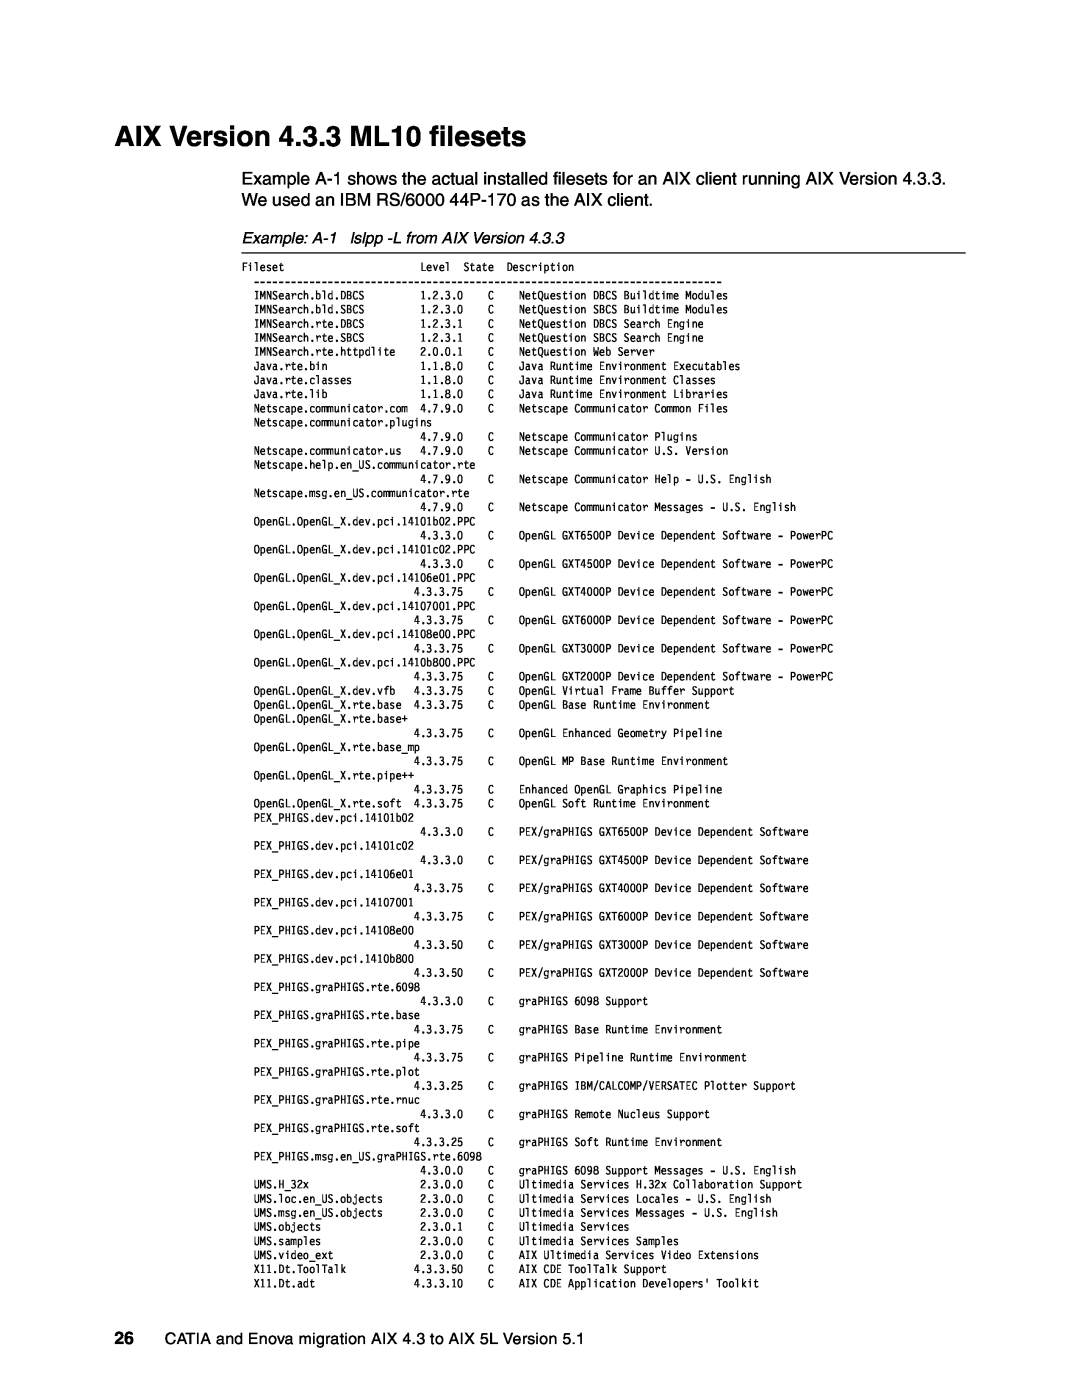 IBM AIX5L, AIX 4.3 manual AIX Version 4.3.3 ML10 filesets, Example A-1lslpp -Lfrom AIX Version 